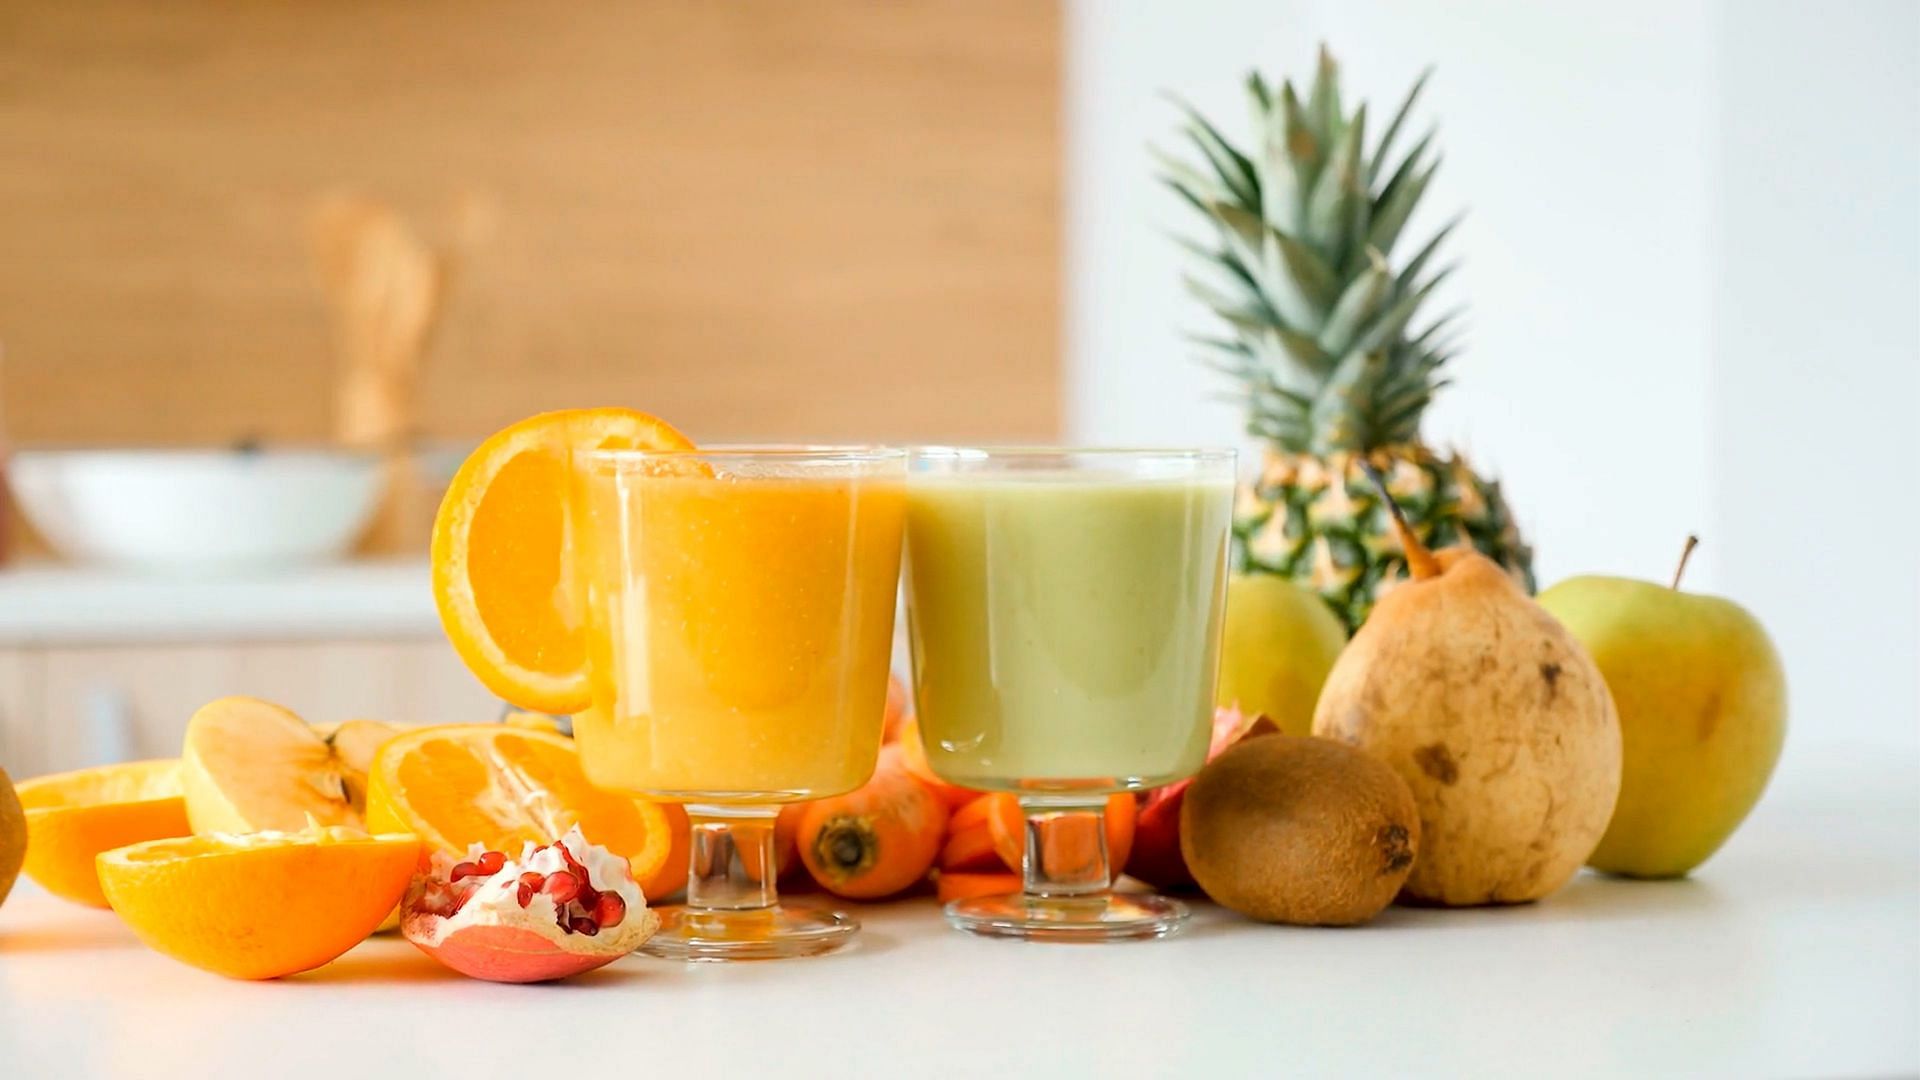 Fruit-Juice for cough (Image via Unsplash/Jugoslocos)